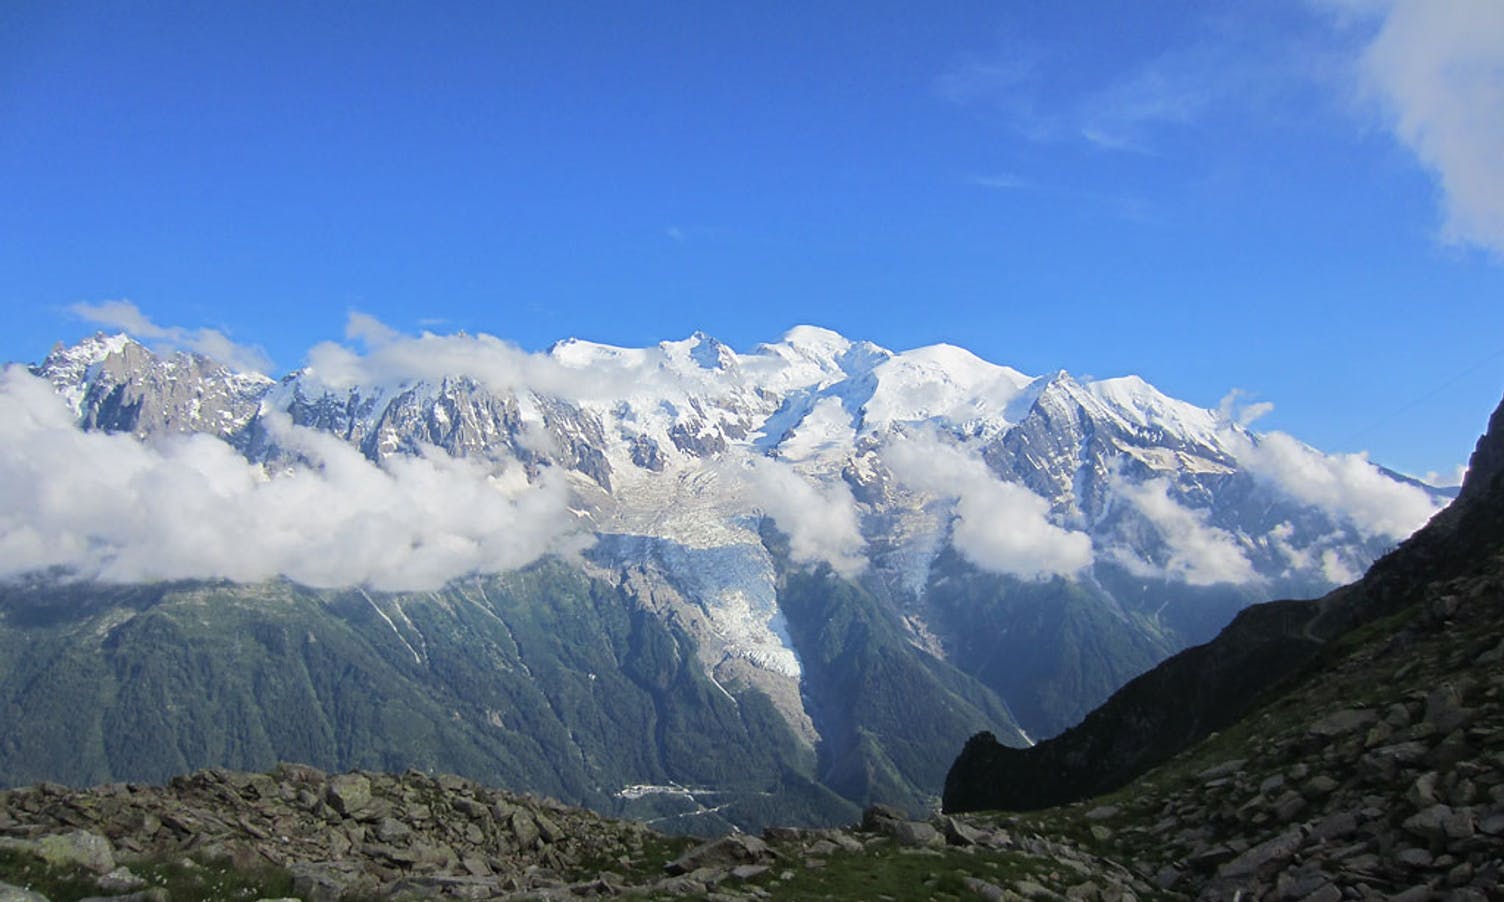 Turistmålet Aigile du Midi midt i bildet, der det går bane opp til 3850 moh, tatt frå 4000 moh. (Privat foto)